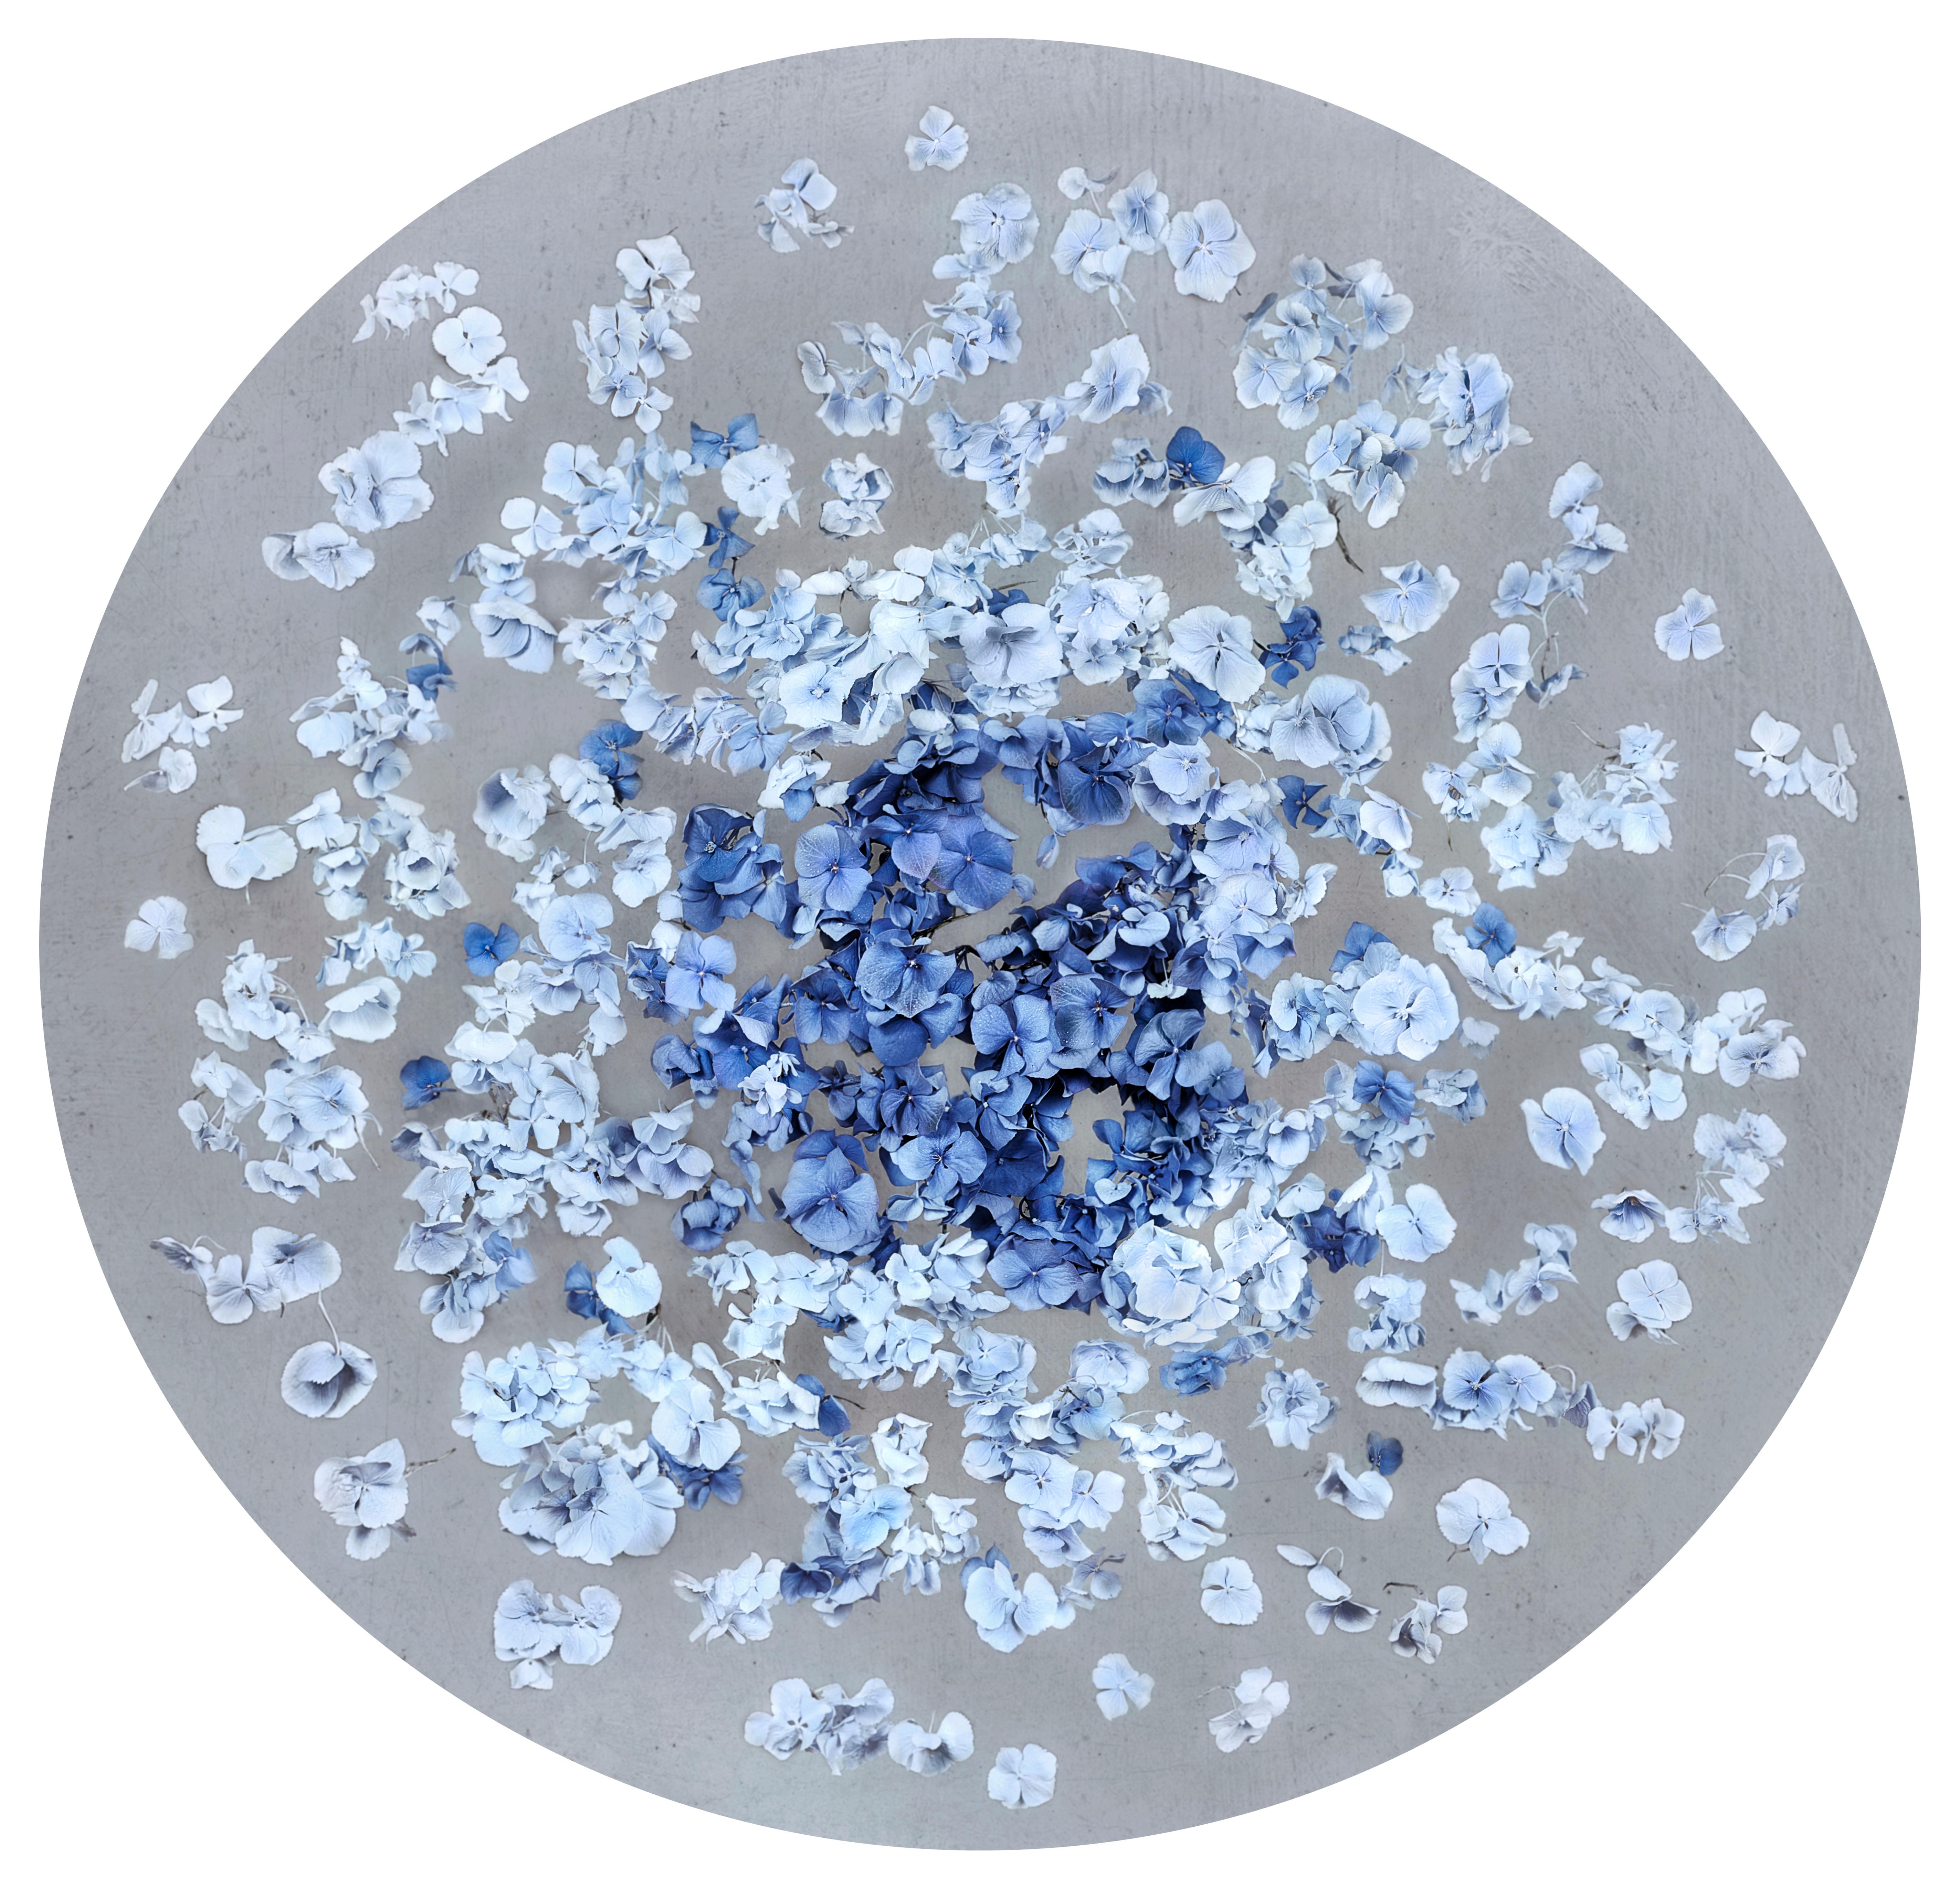 Serie: Hydrangea Collection'S
C Druck auf Dibond-Plexiglasscheibe montiert
Auflage von 6 + 2 AP

"In meiner Arbeit fasziniert es mich, bestehende Formen umzugestalten, neue Formen zu erfinden. Unter der Oberfläche der kugelförmigen Blume entdeckte